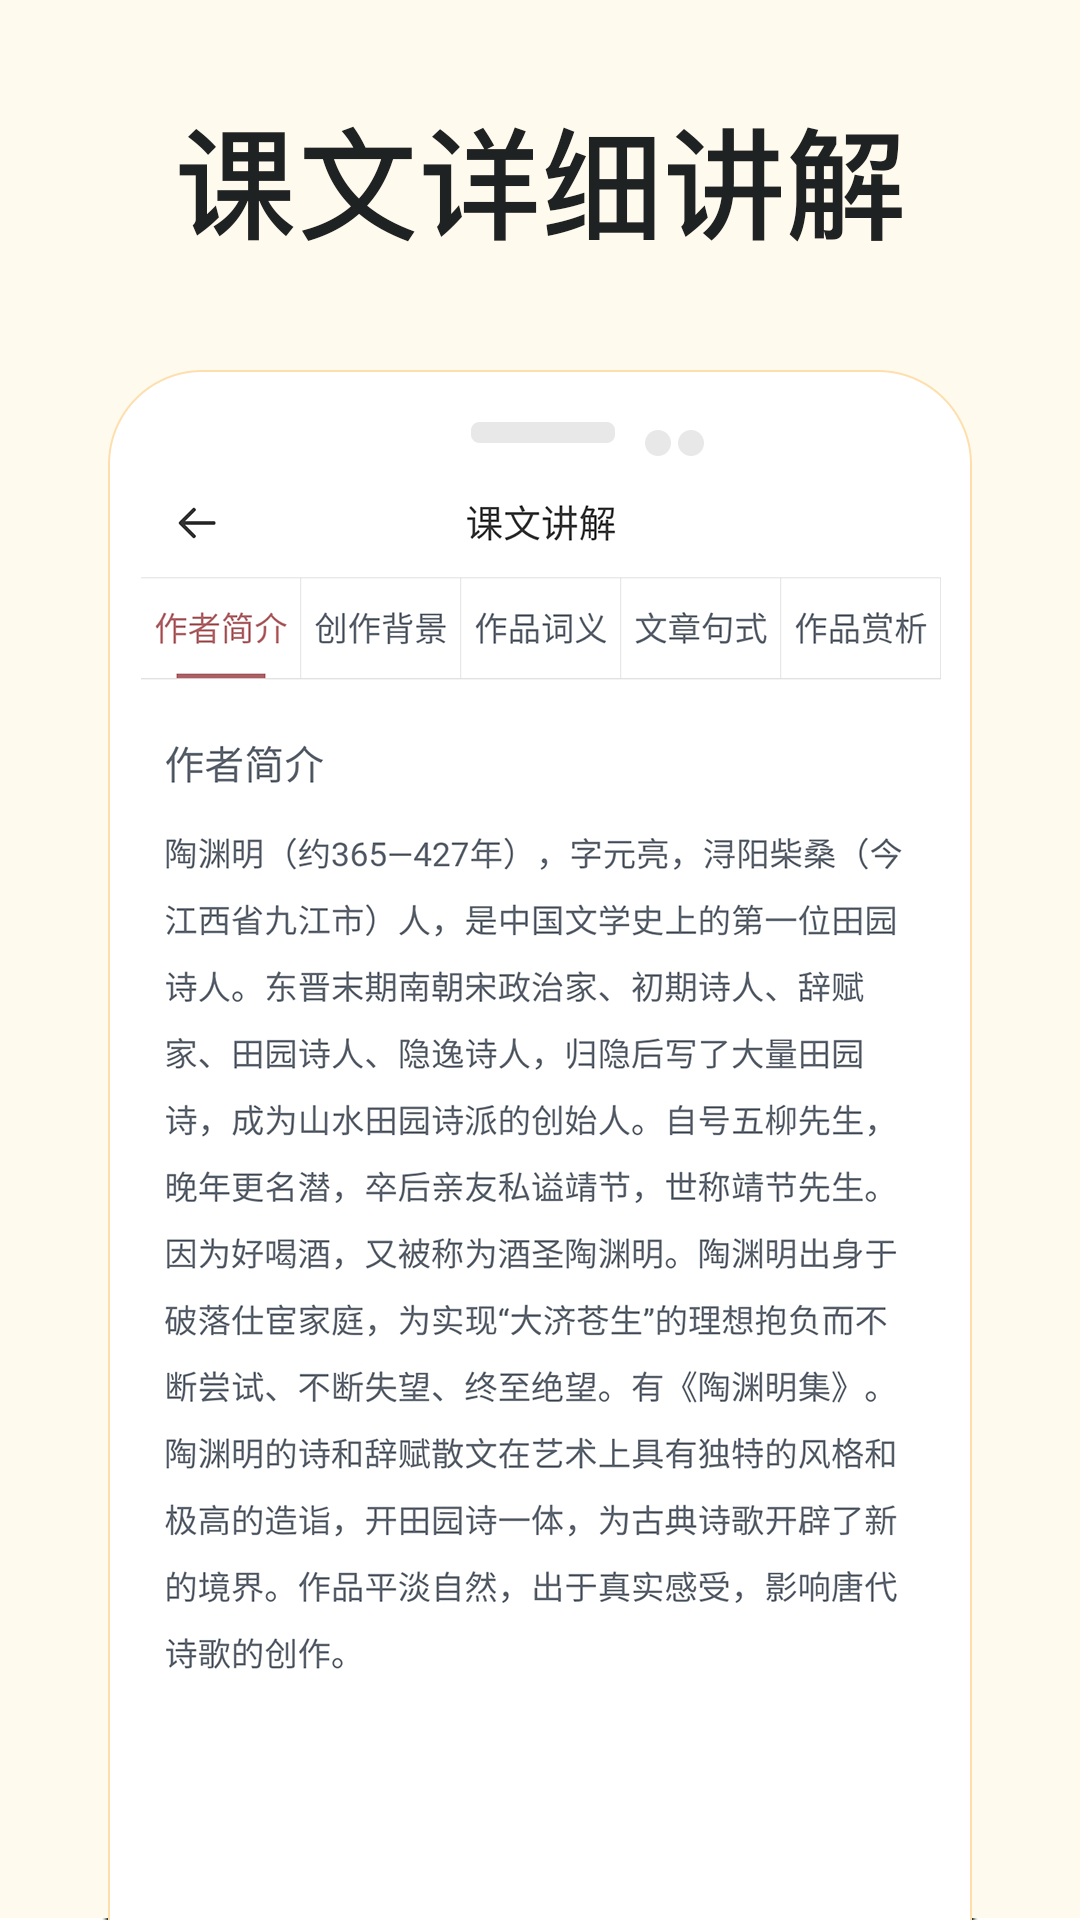 悦辅有声语文app1.4